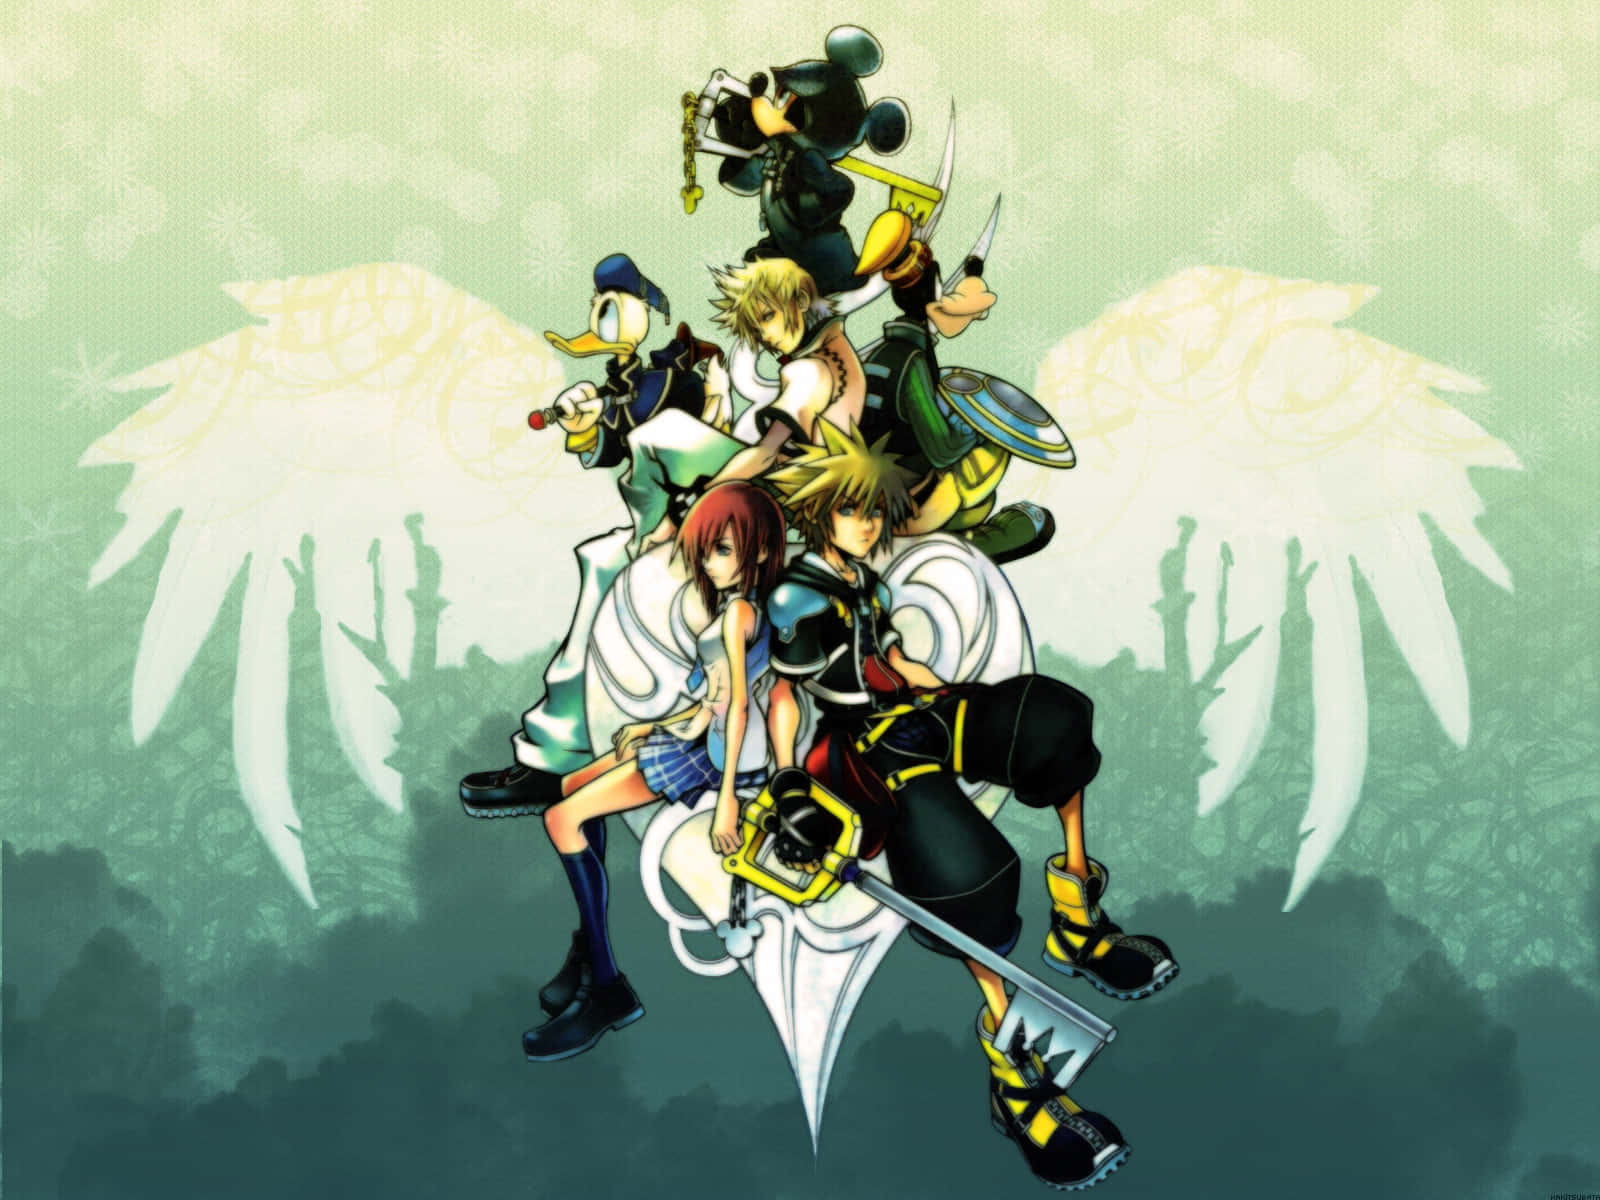 Sumérgeteen El Mundo De Kingdom Hearts Con Roxas. Fondo de pantalla